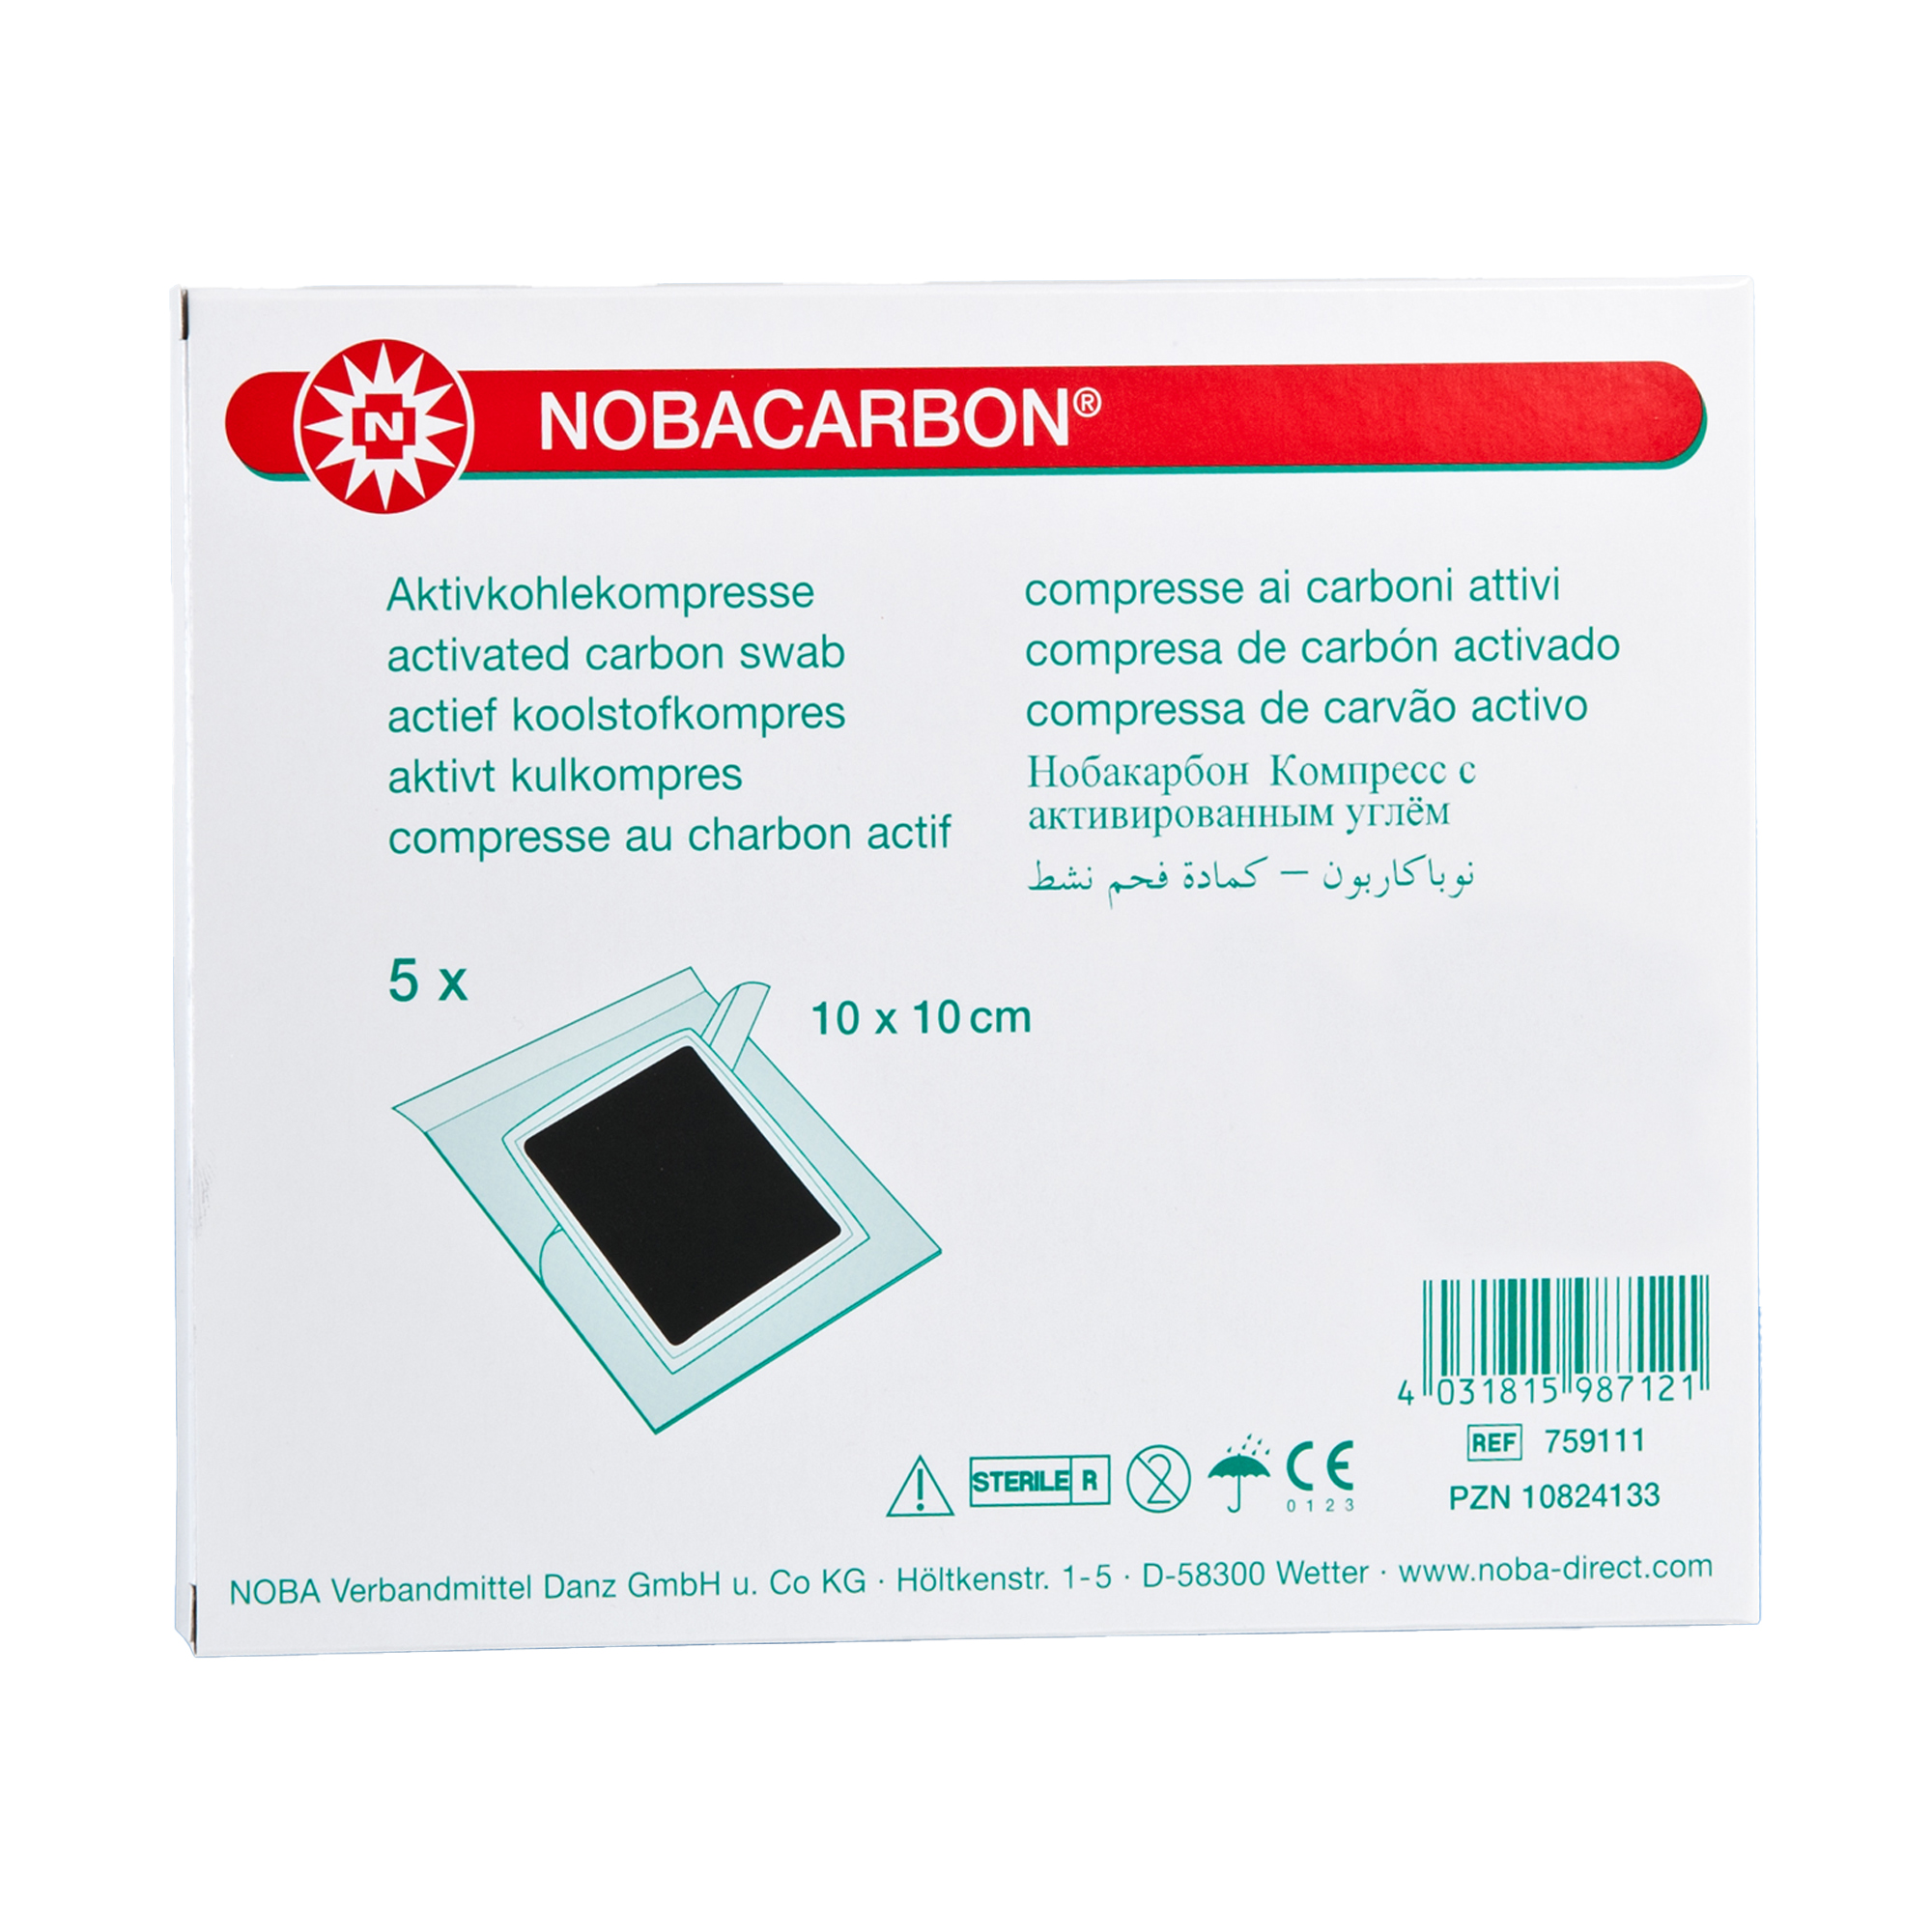 NOBACARBON Aktivkohlekompresse steril verpackt 5 Stück